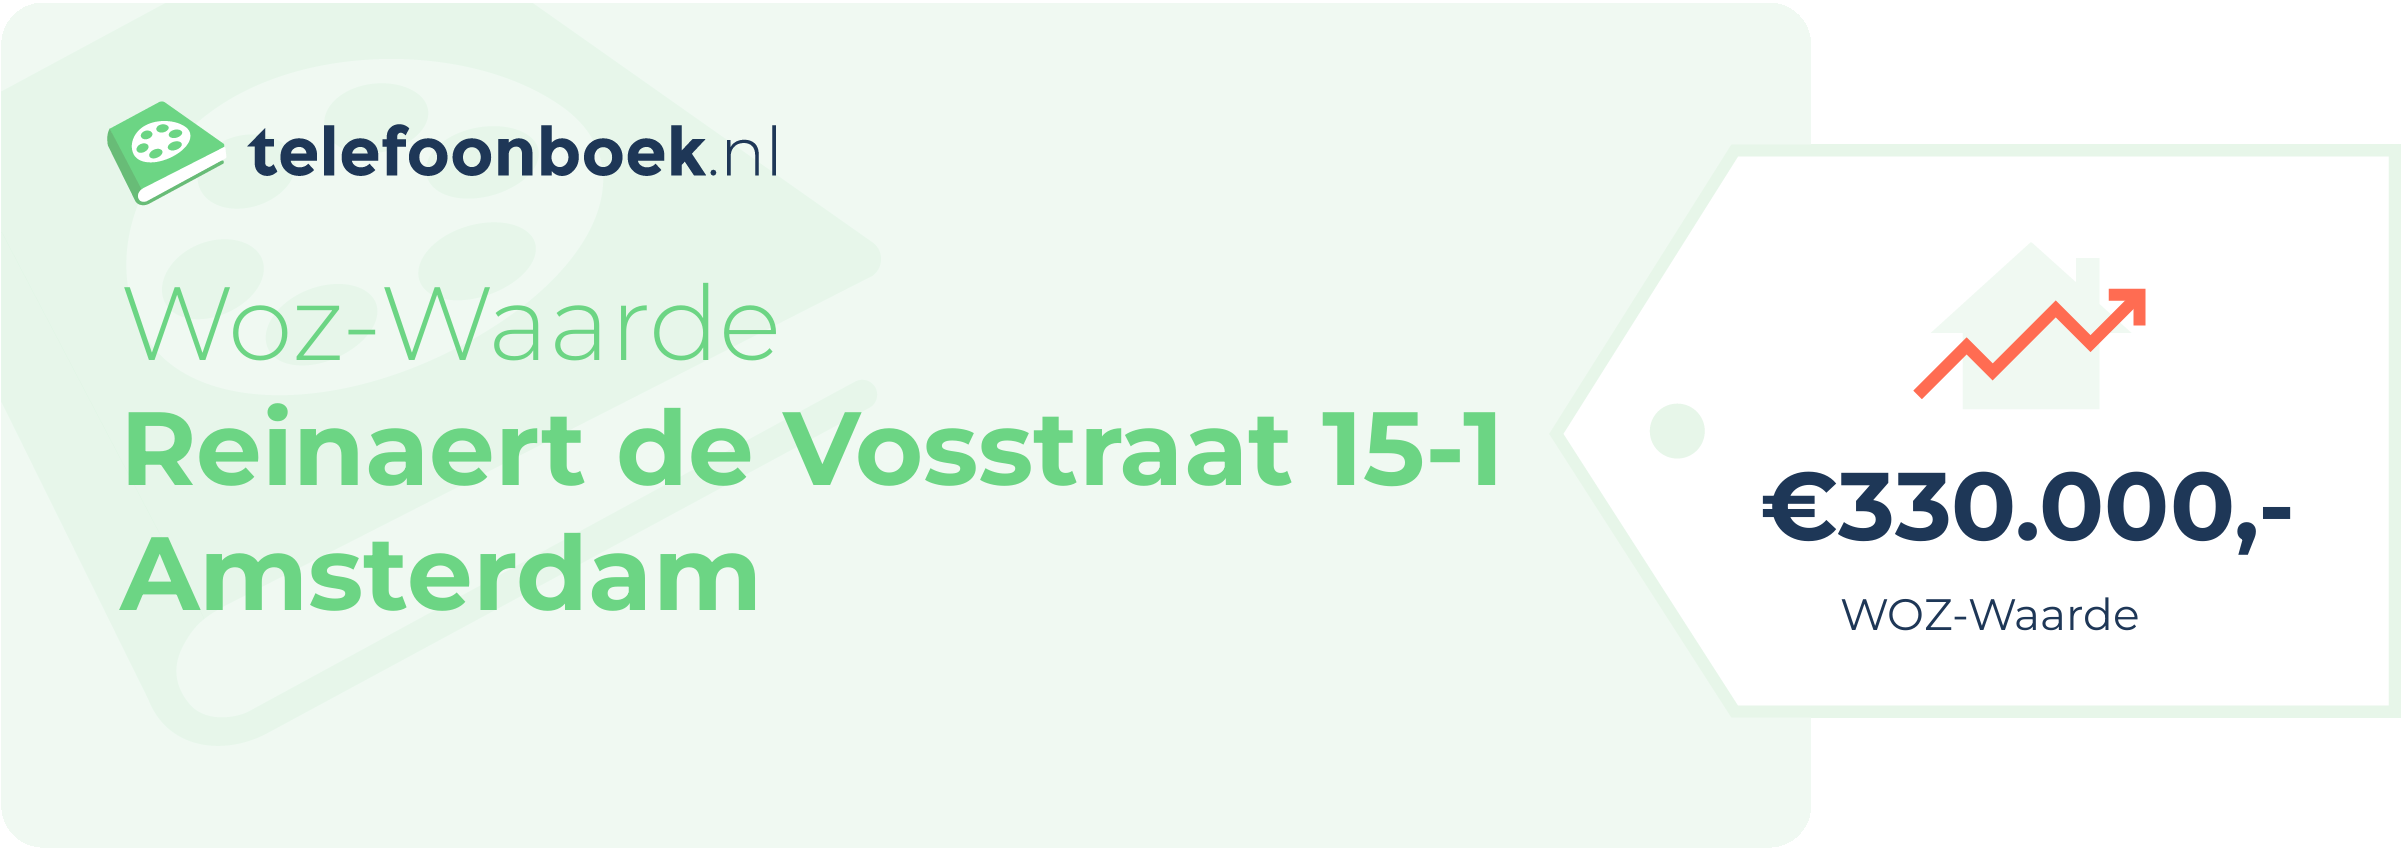 WOZ-waarde Reinaert De Vosstraat 15-1 Amsterdam